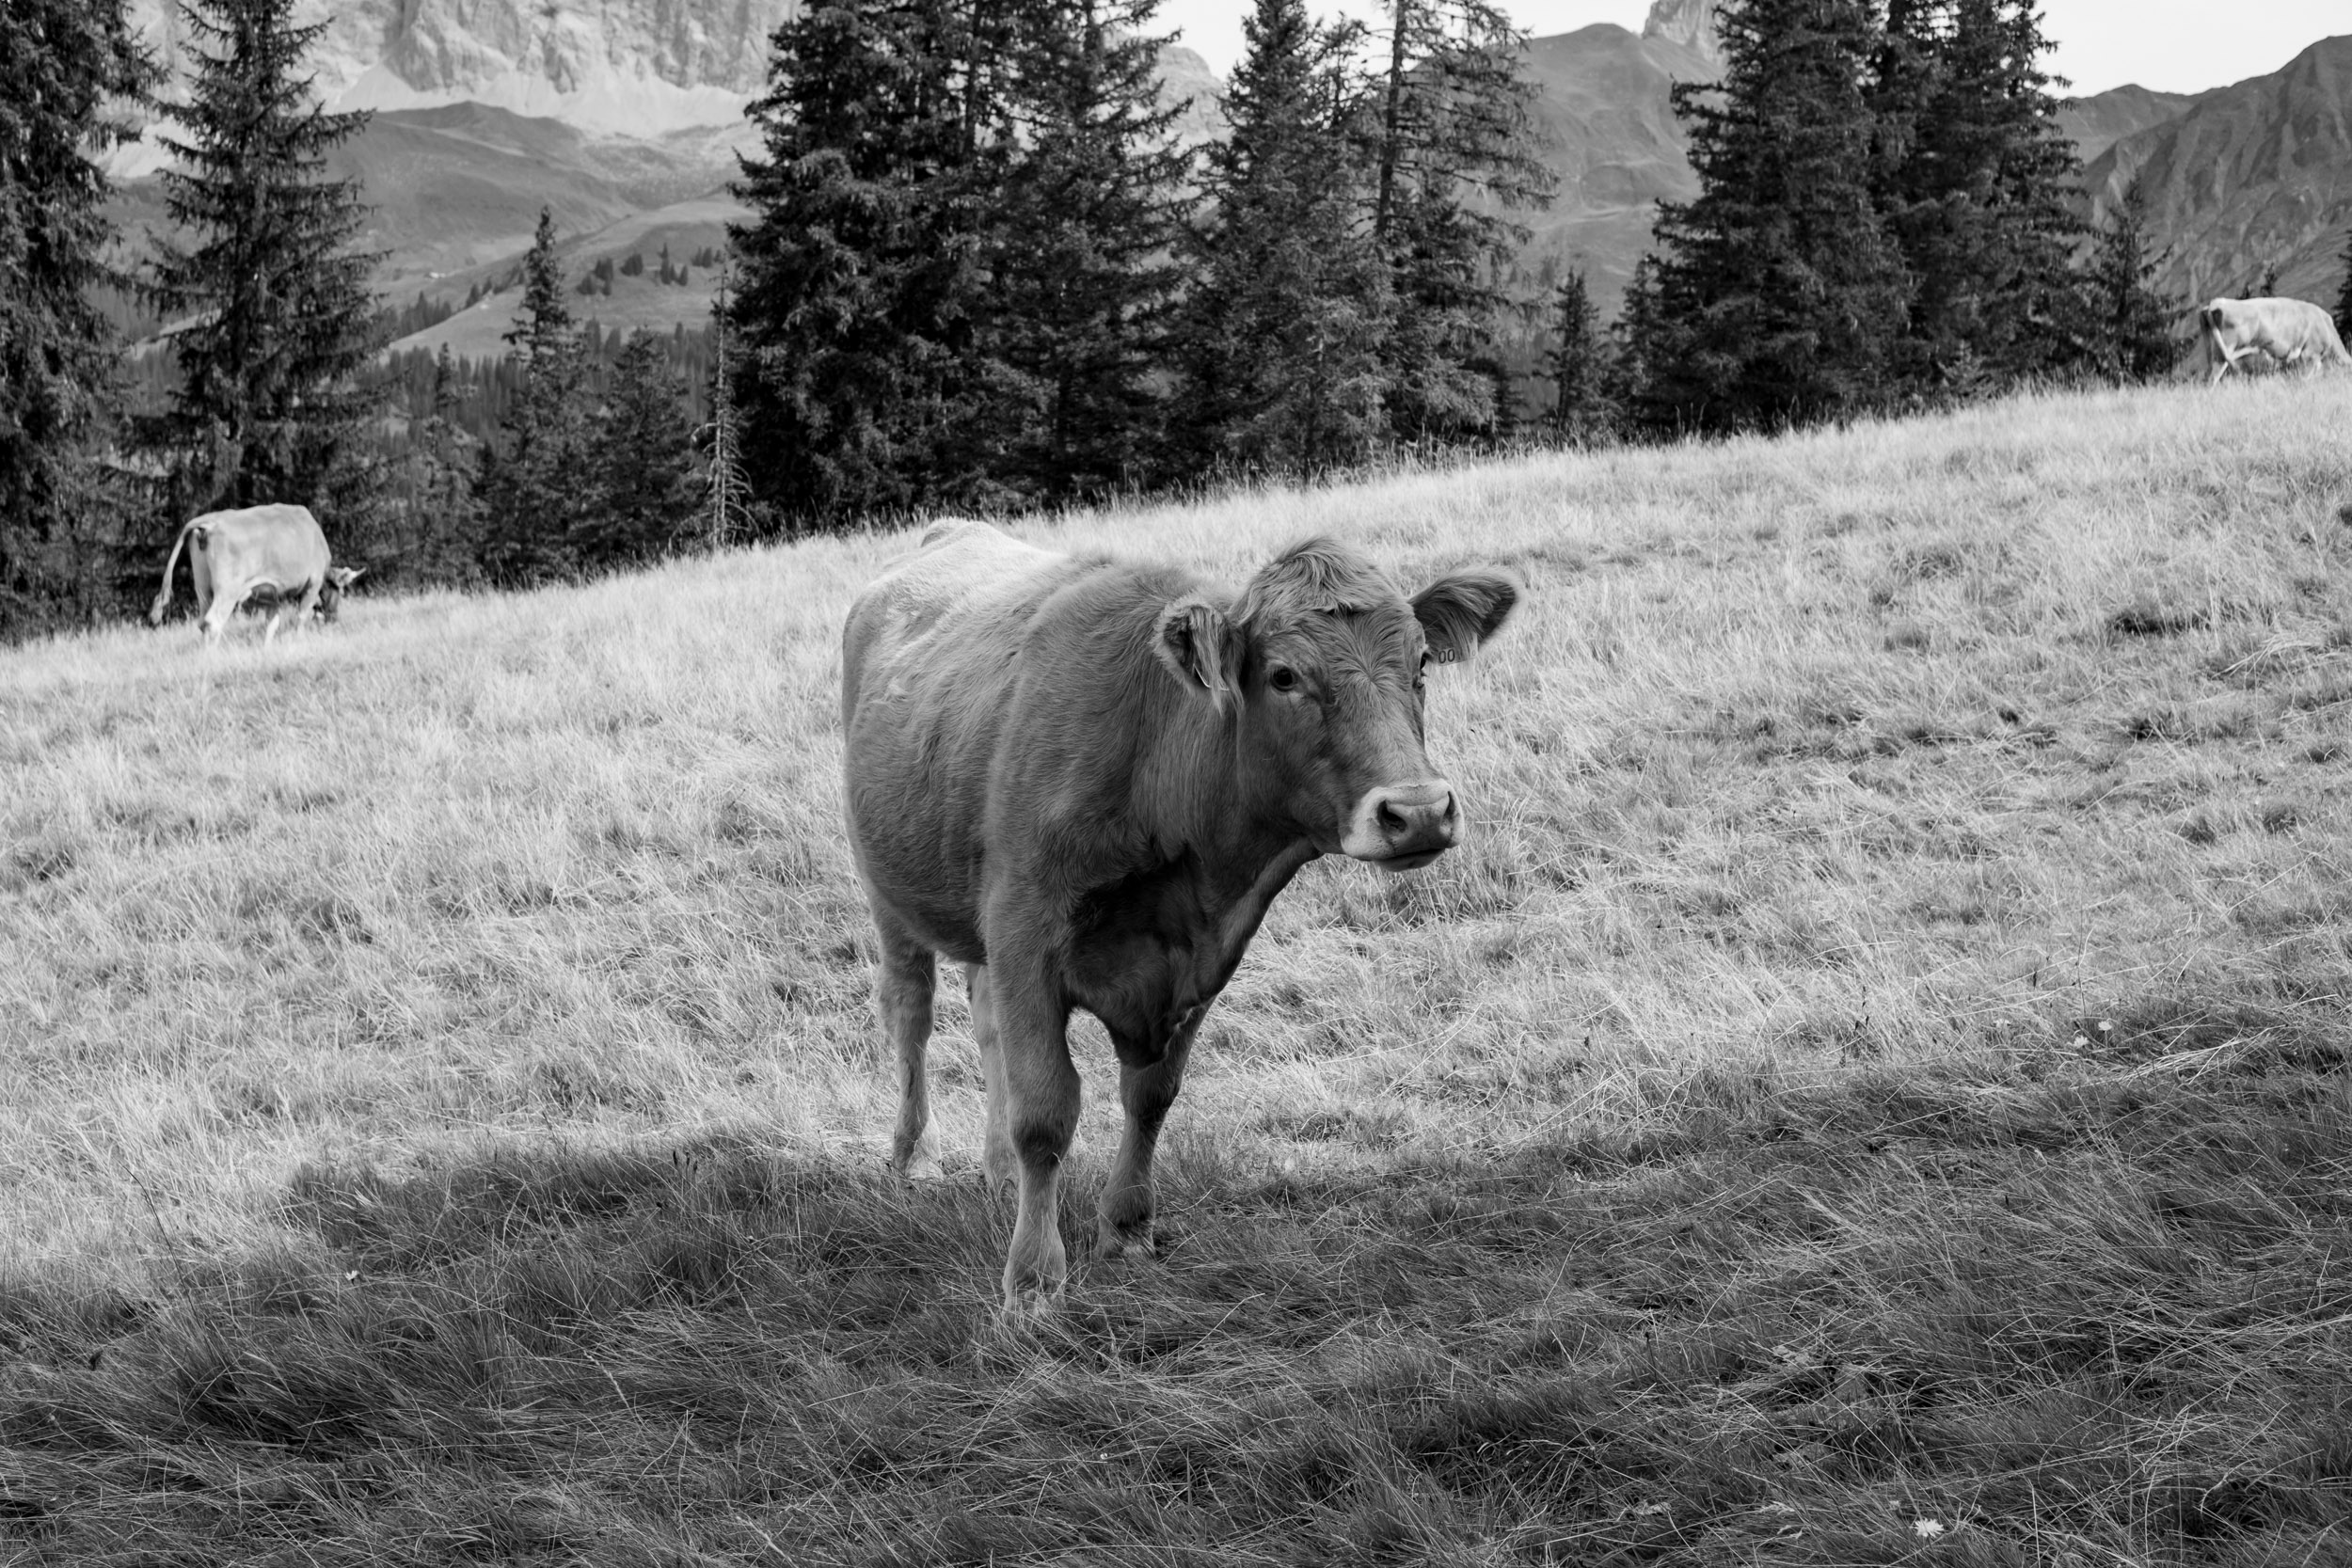 A beautiful mountain cow.